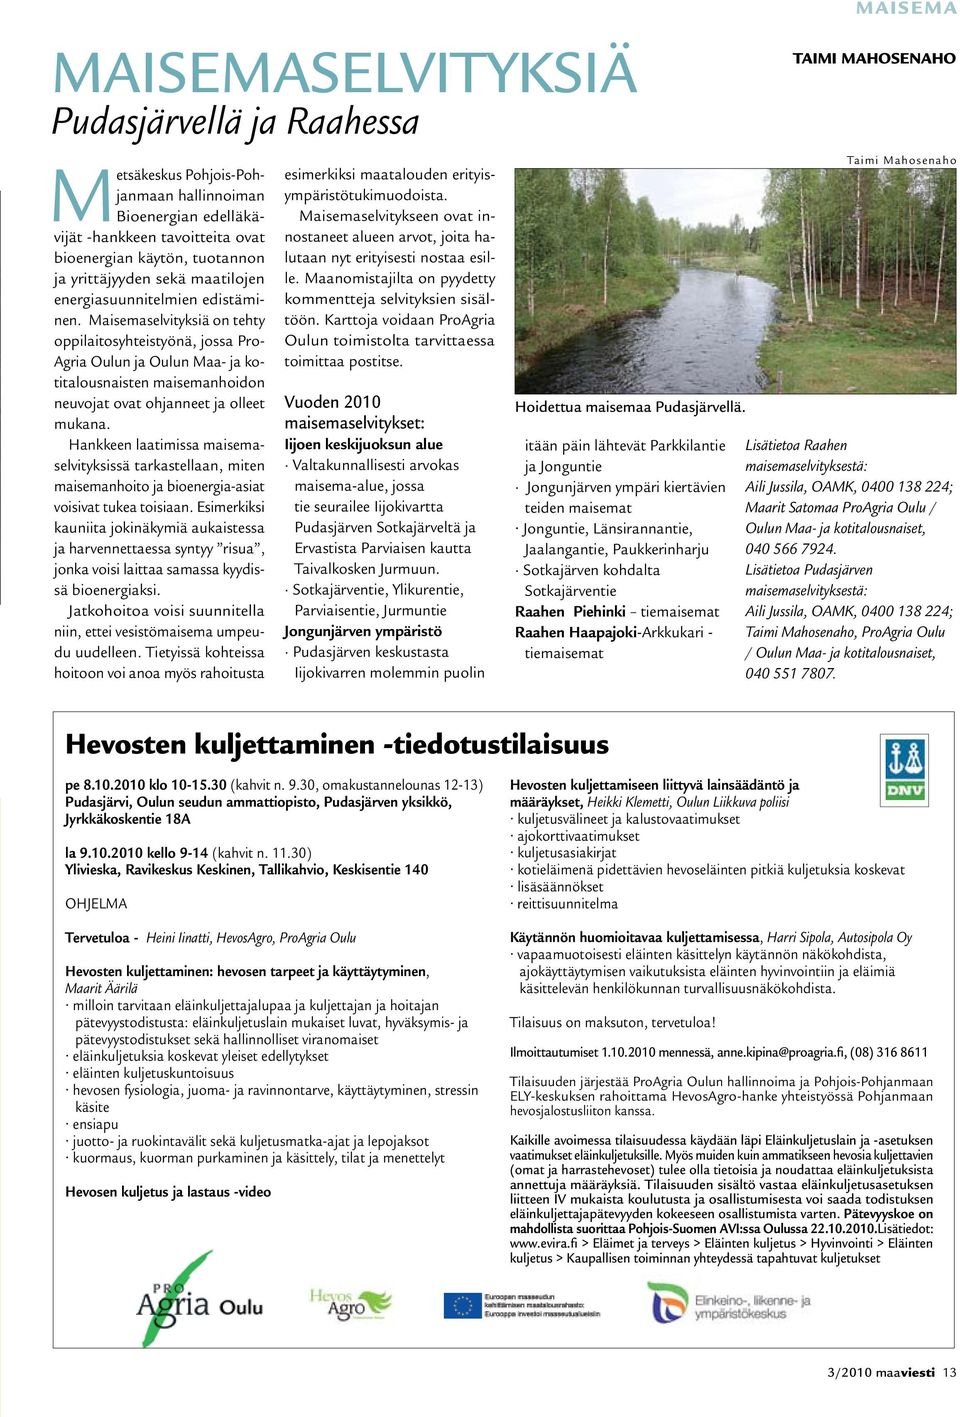 Maisemaselvityksiä on tehty oppilaitosyhteistyönä, jossa Pro- Agria Oulun ja Oulun Maa- ja kotitalousnaisten maisemanhoidon neuvojat ovat ohjanneet ja olleet mukana.